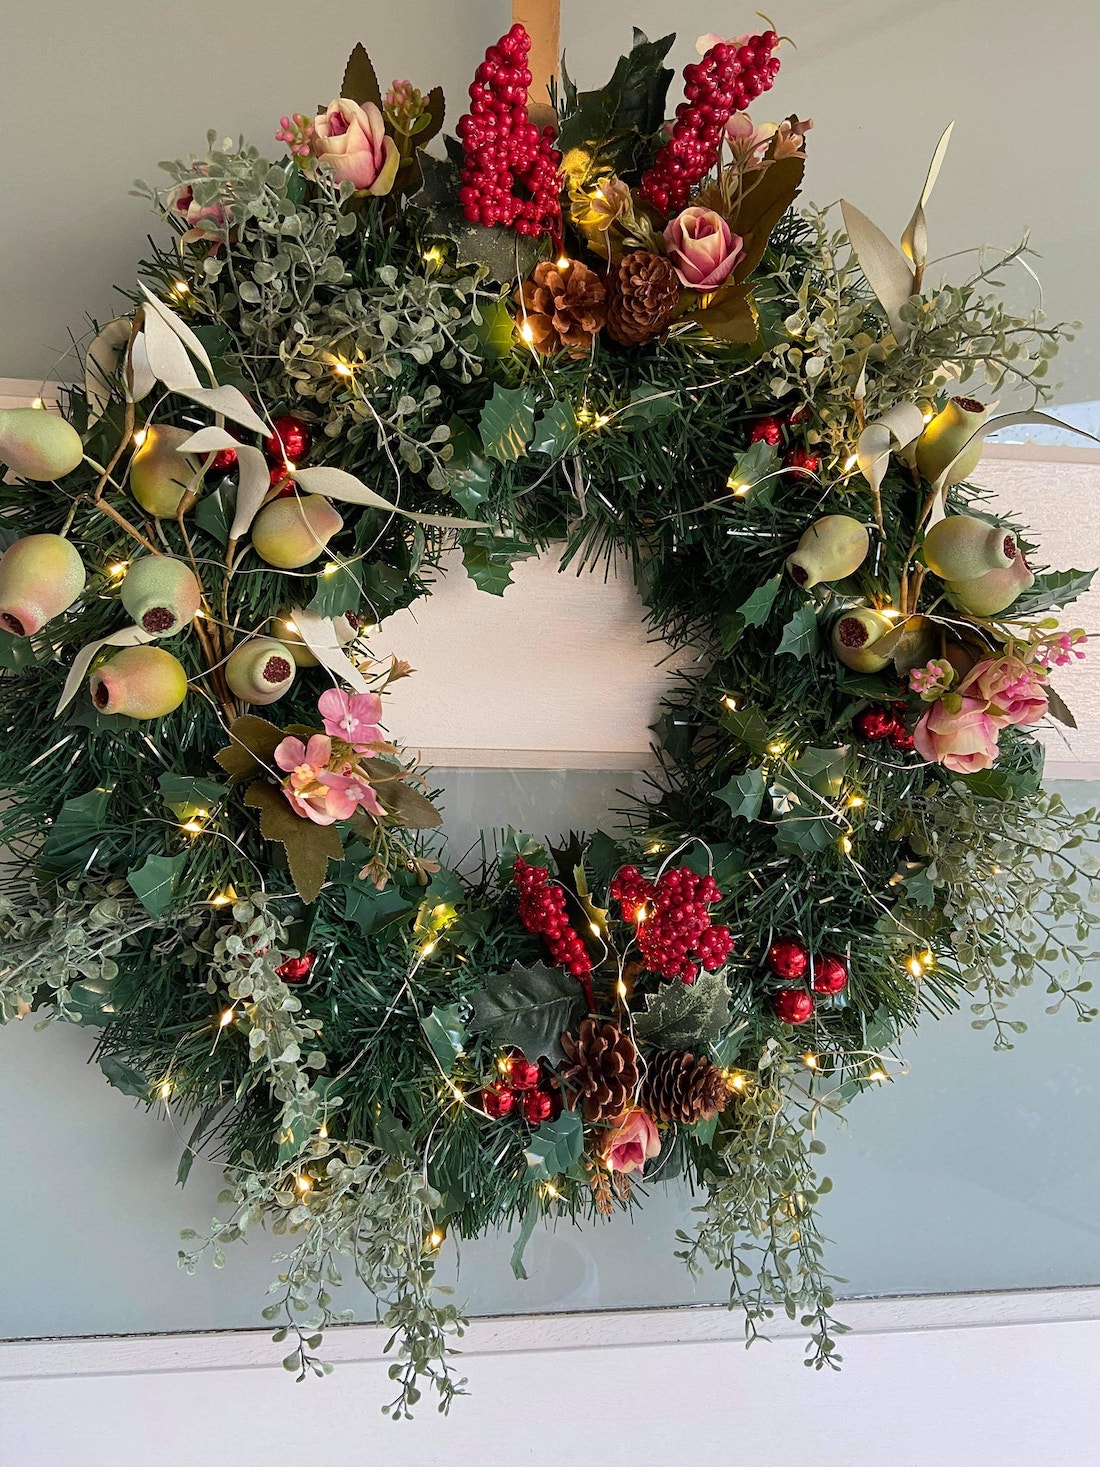 Kmart hack faux Christmas wreath